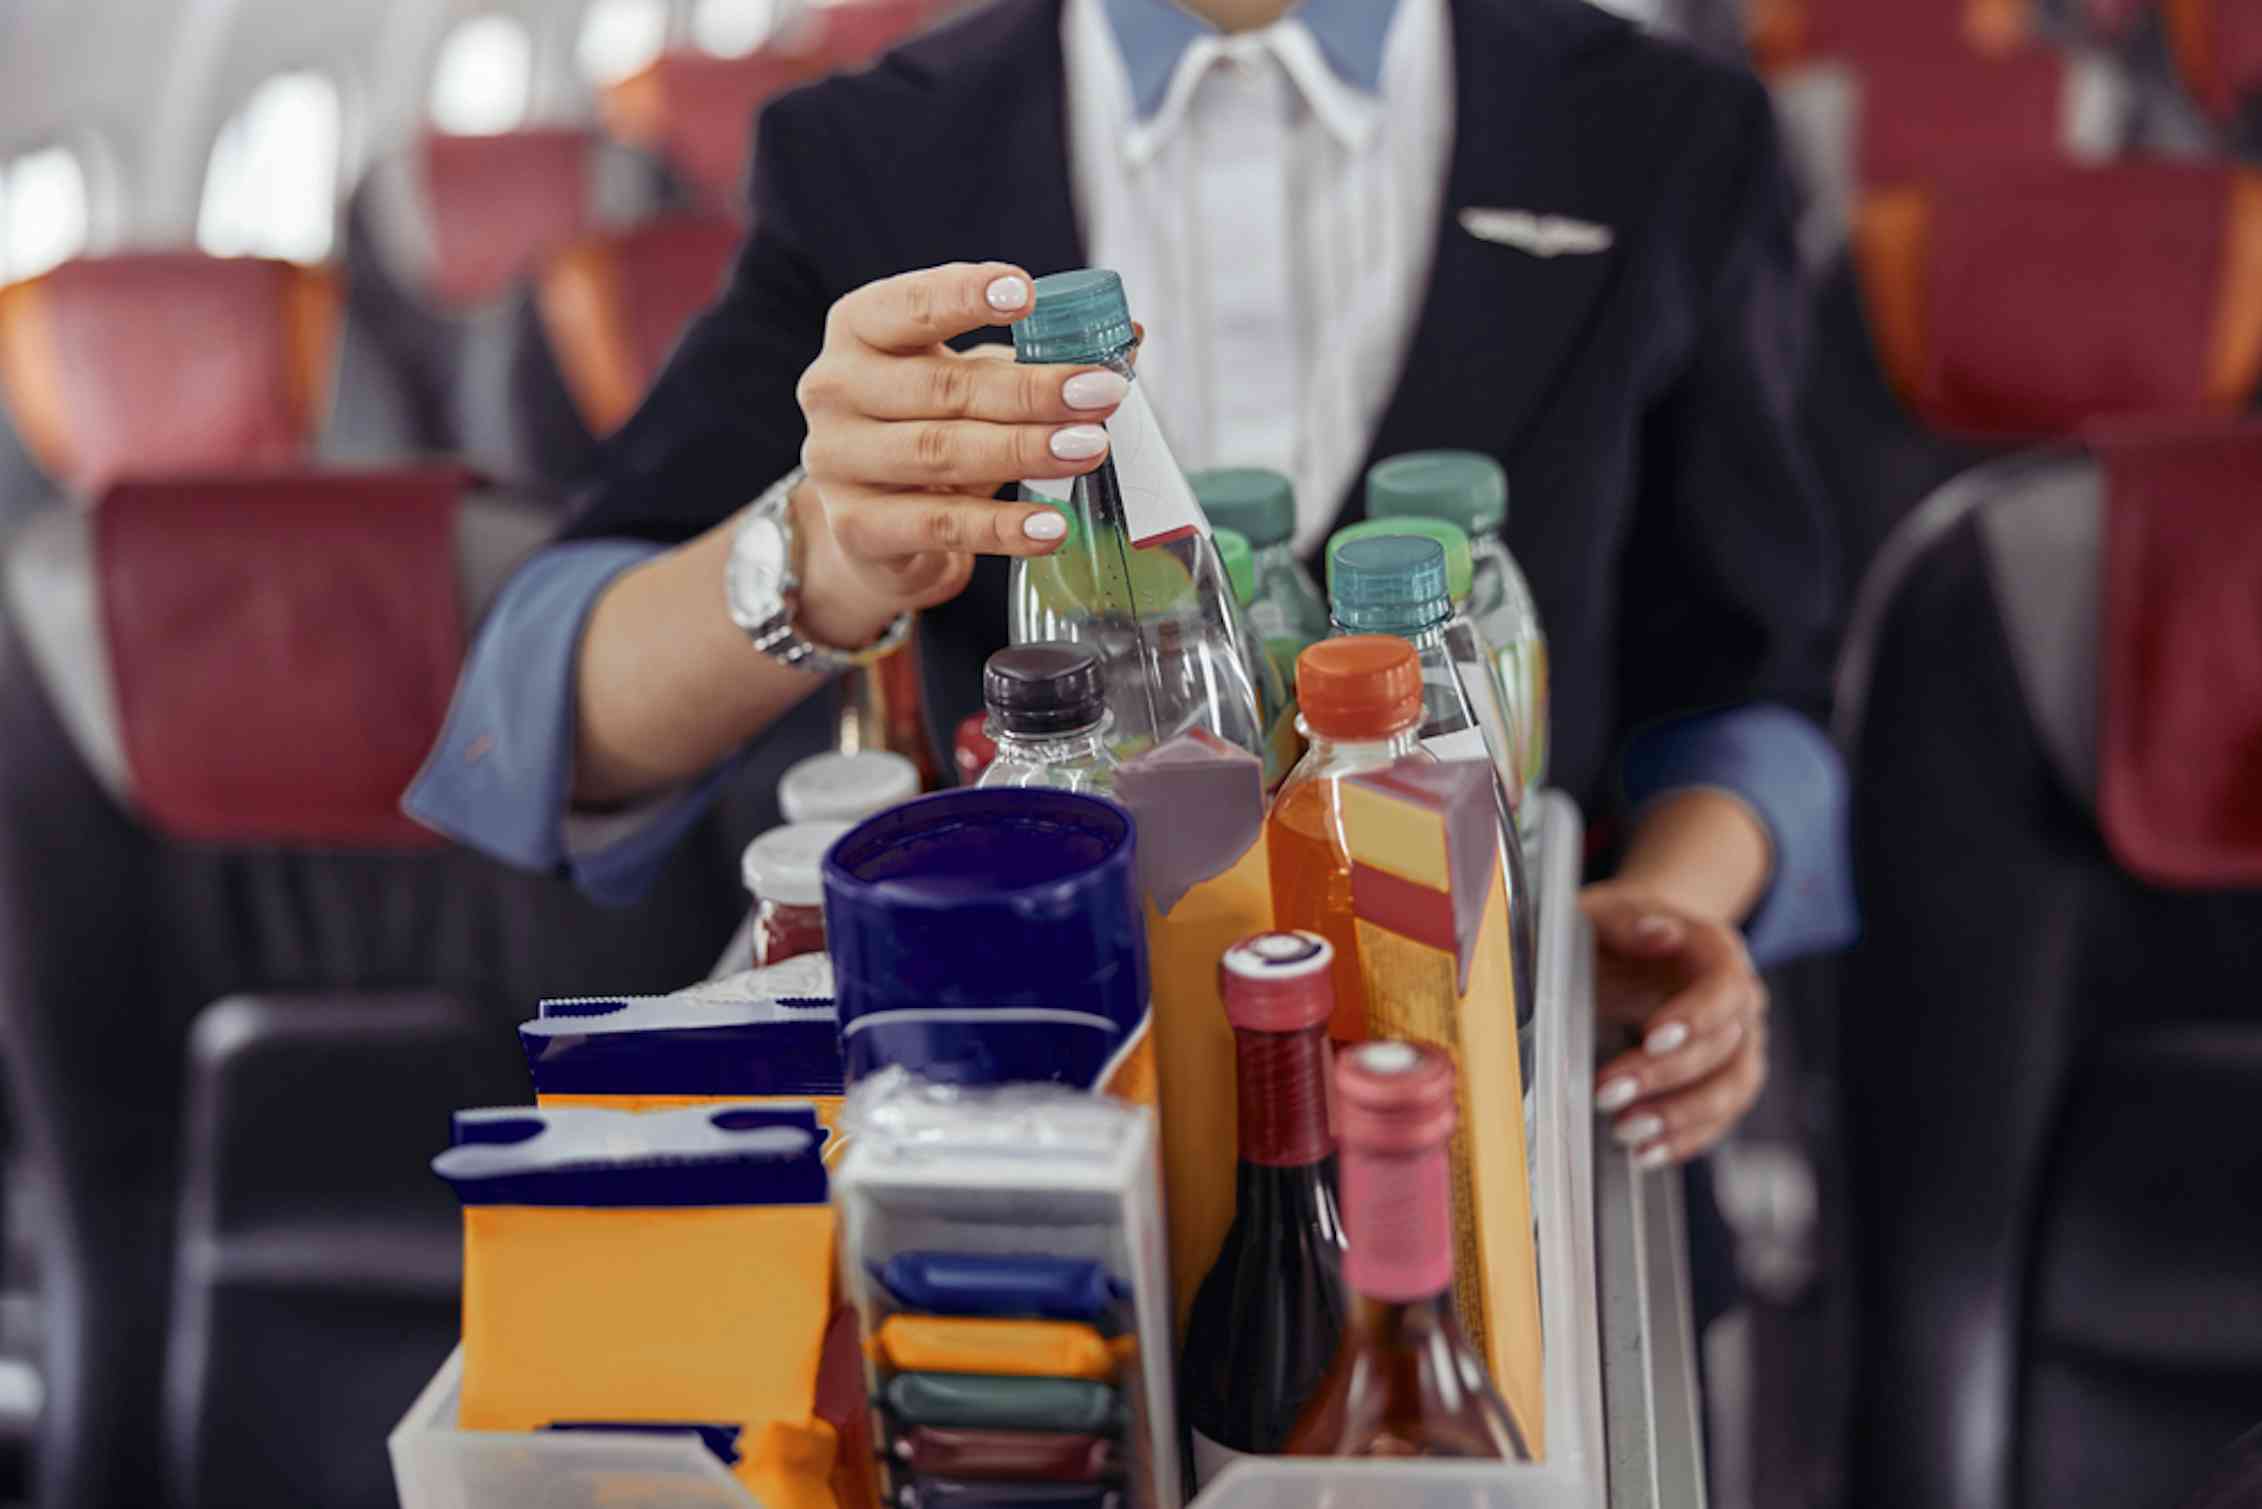 Assistente di volo che preleva una bottiglia d'acqua dal carrello delle bevande in aereo